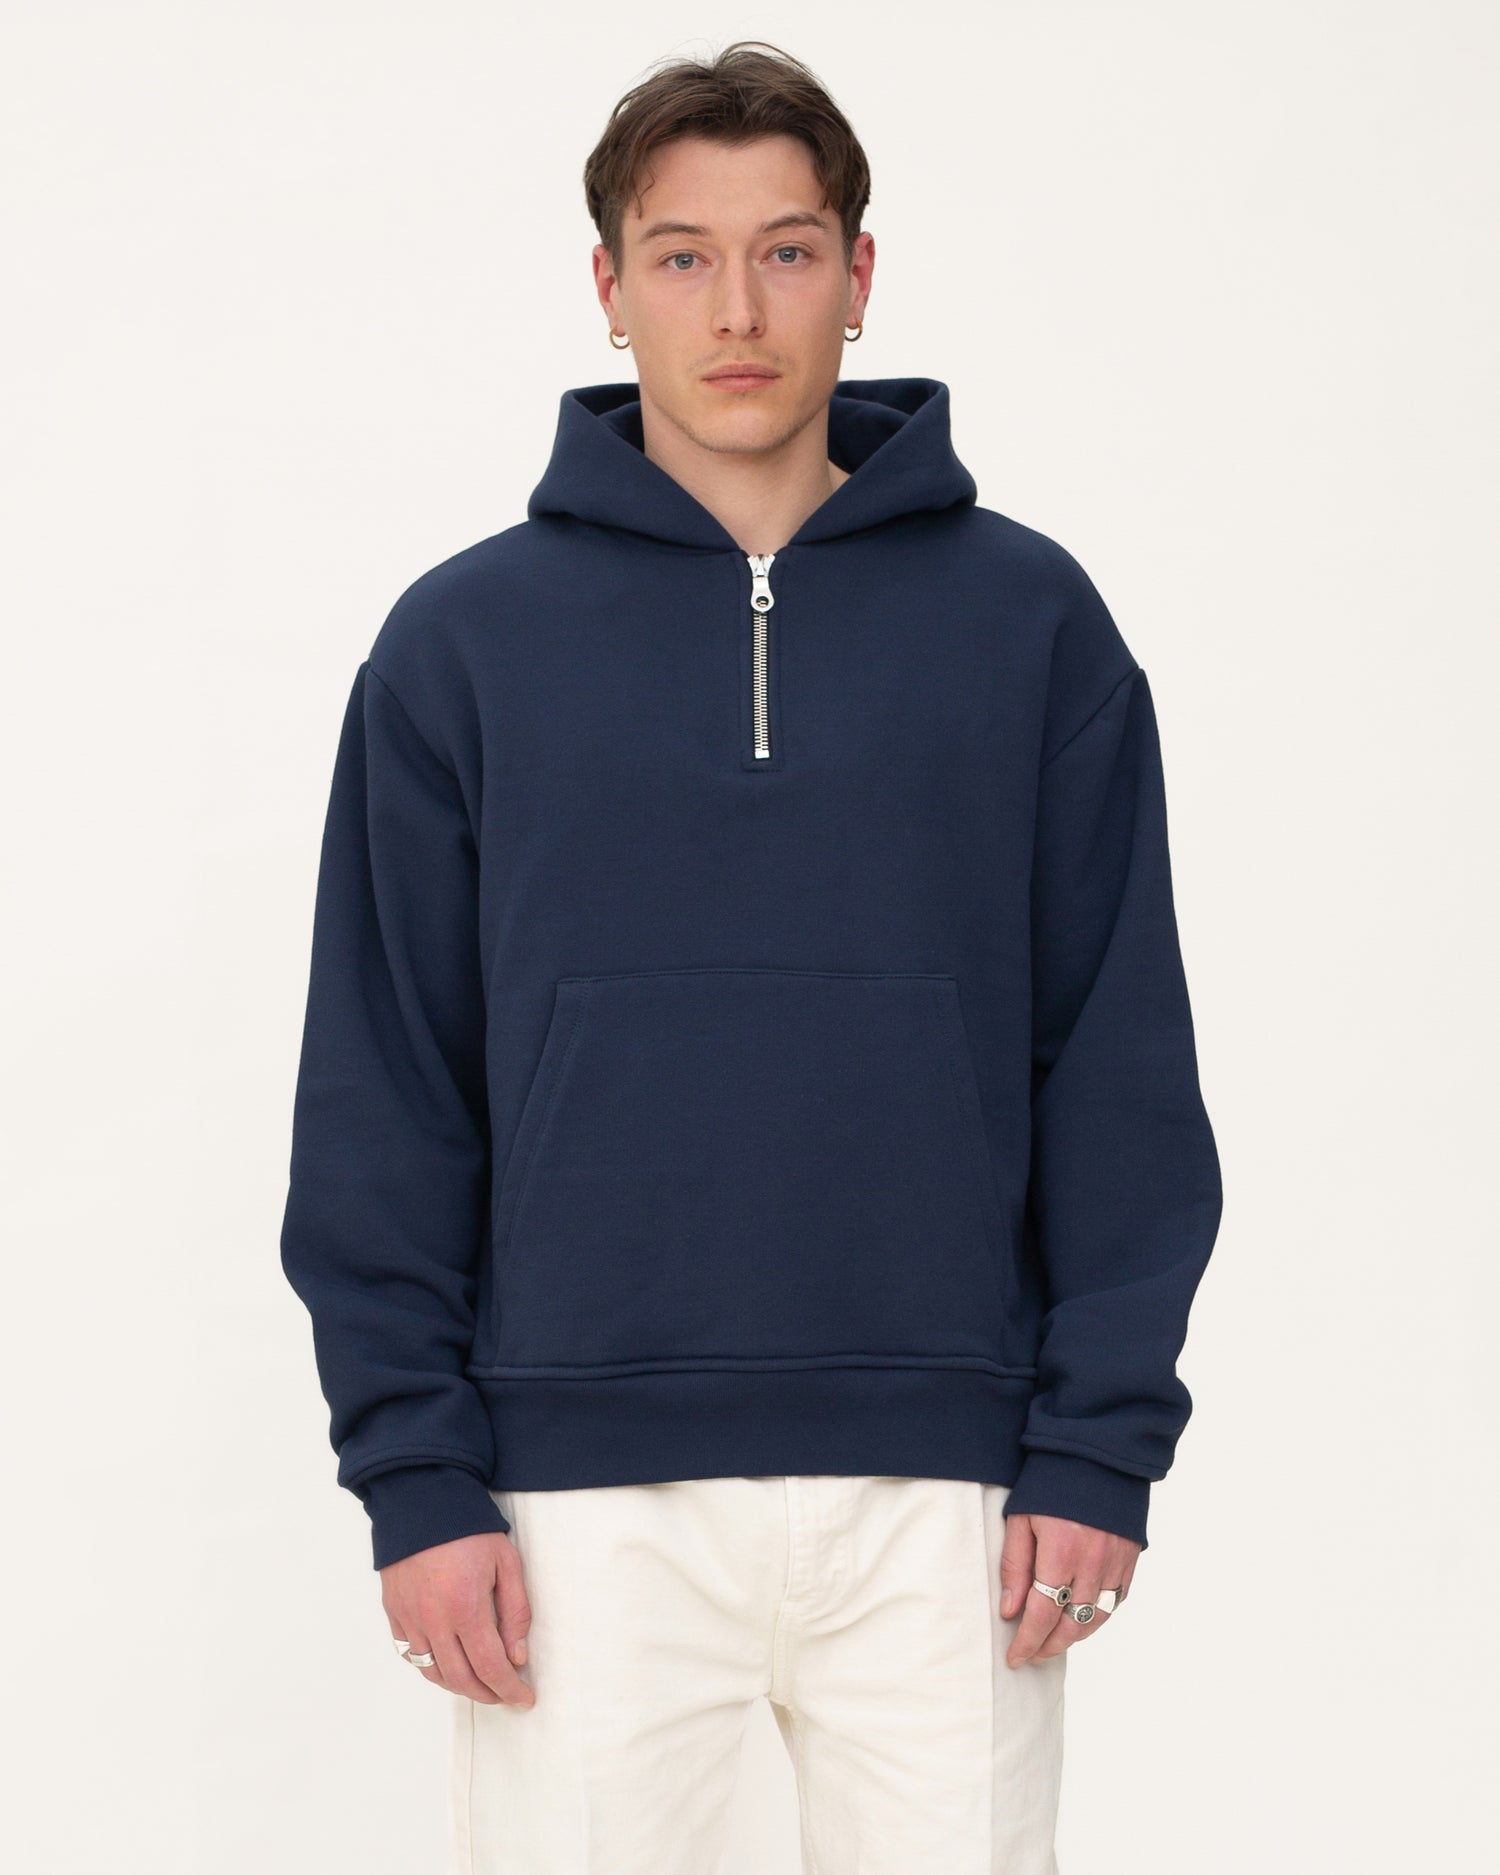 zip up hoodies, navy hoodie, mens hoodie, front side